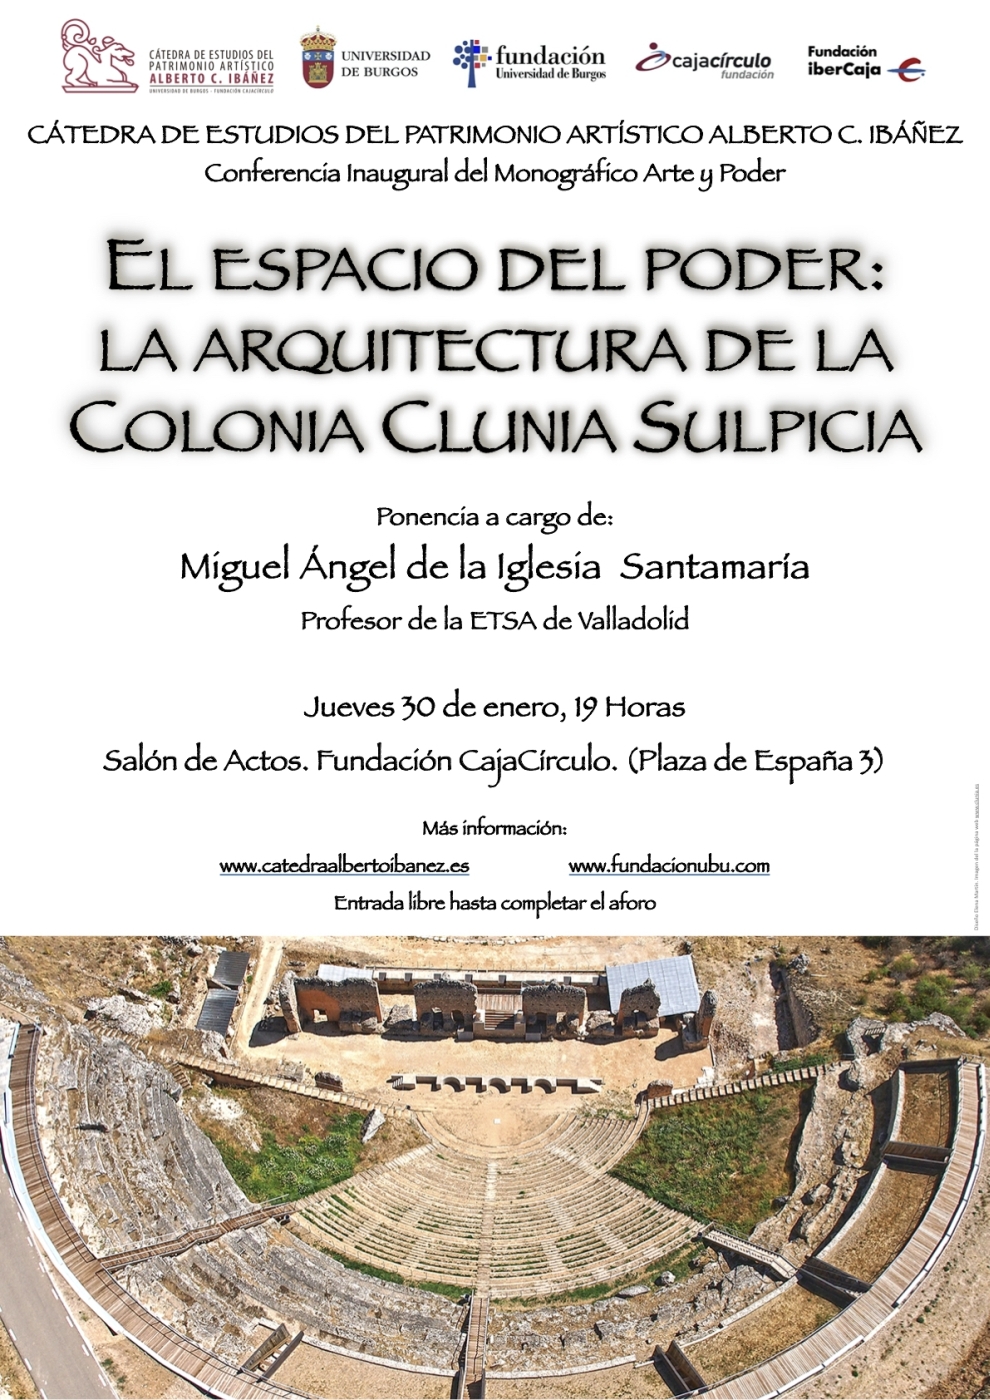 Conferencia “El espacio del poder: la arquitectura de la colonia Clunia Sulpicia”